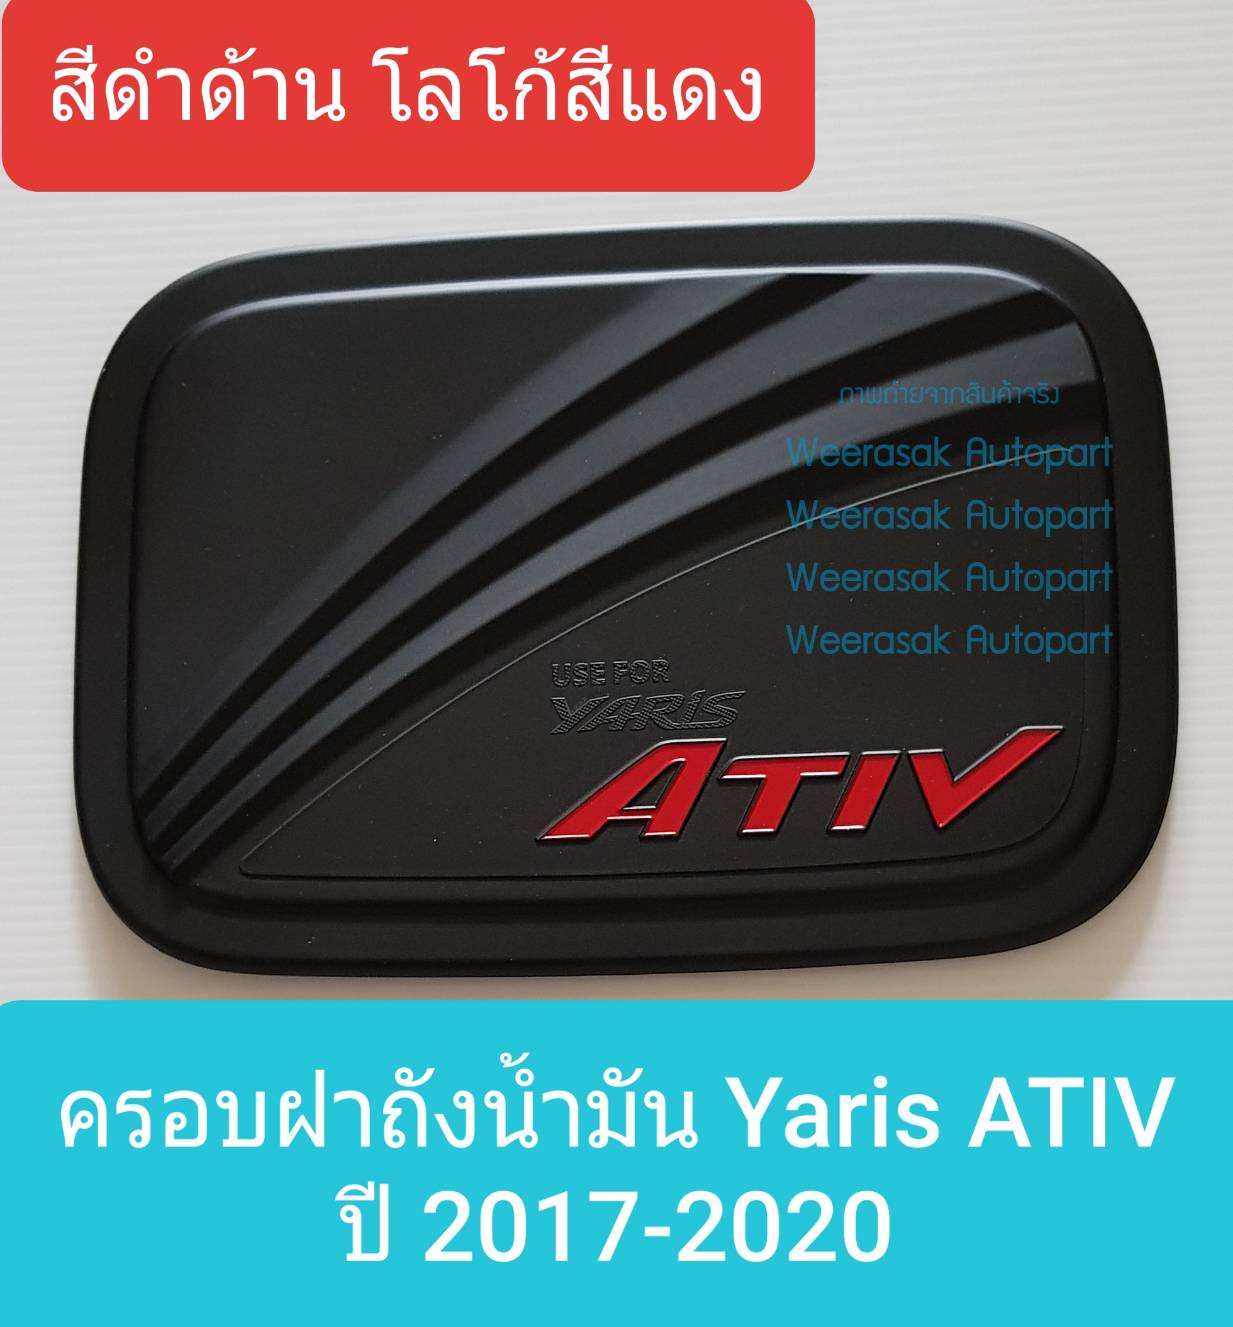 ครอบฝาถังน้ำมัน Toyota Yaris ATIV โตโยต้า ยาริส เอทีฟ ปี 2017-ปัจจุบัน (สีดำด้านโลโก้สีแดง) (ใช้เทปกาว 3M)